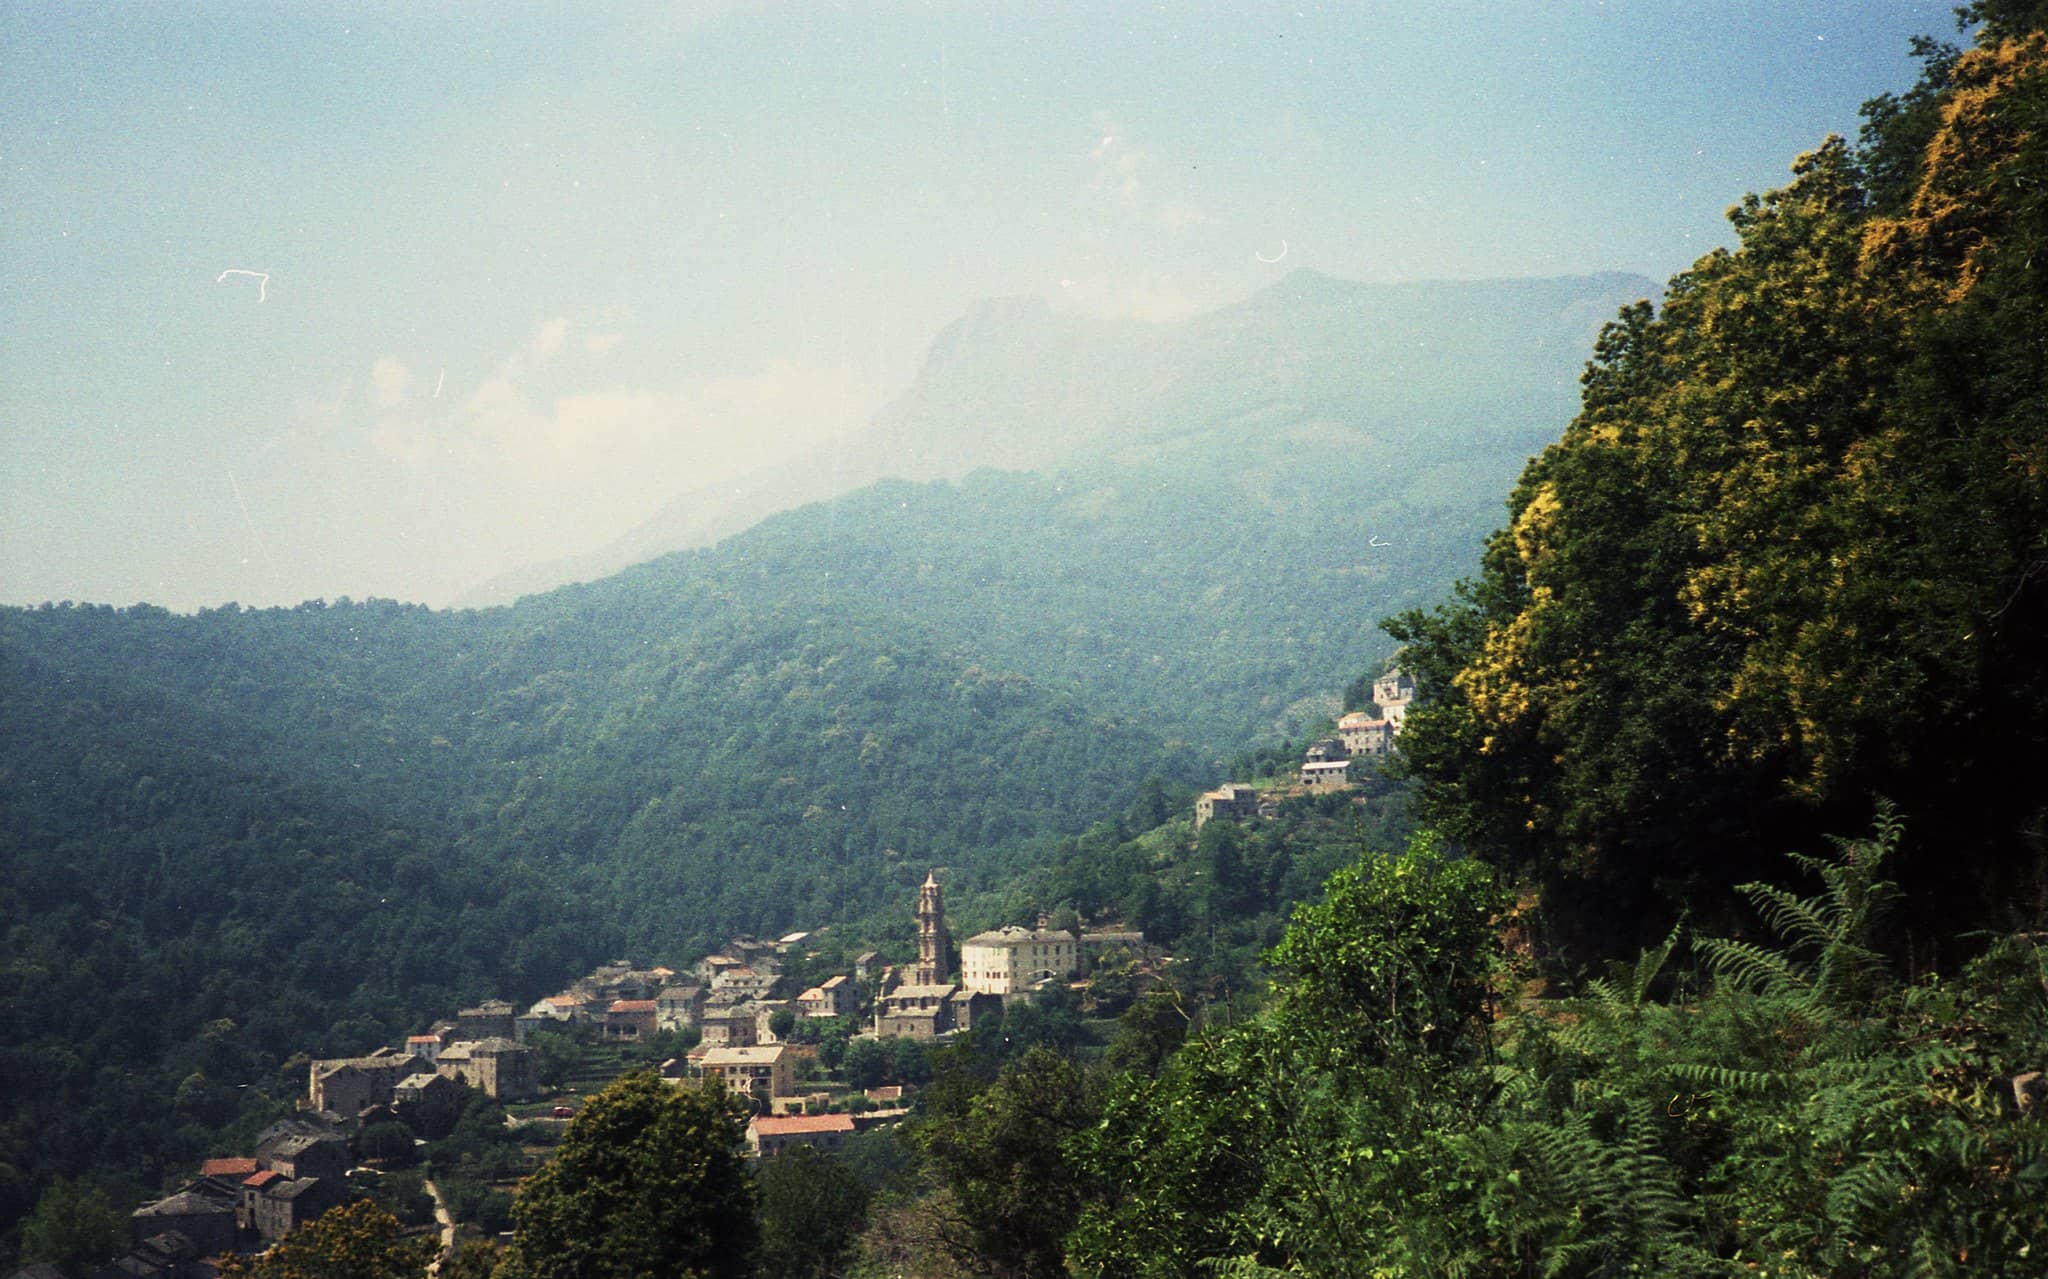  Vue d’ensemble du village de La Porta. Maisons regroupées entourées de végétation verte.